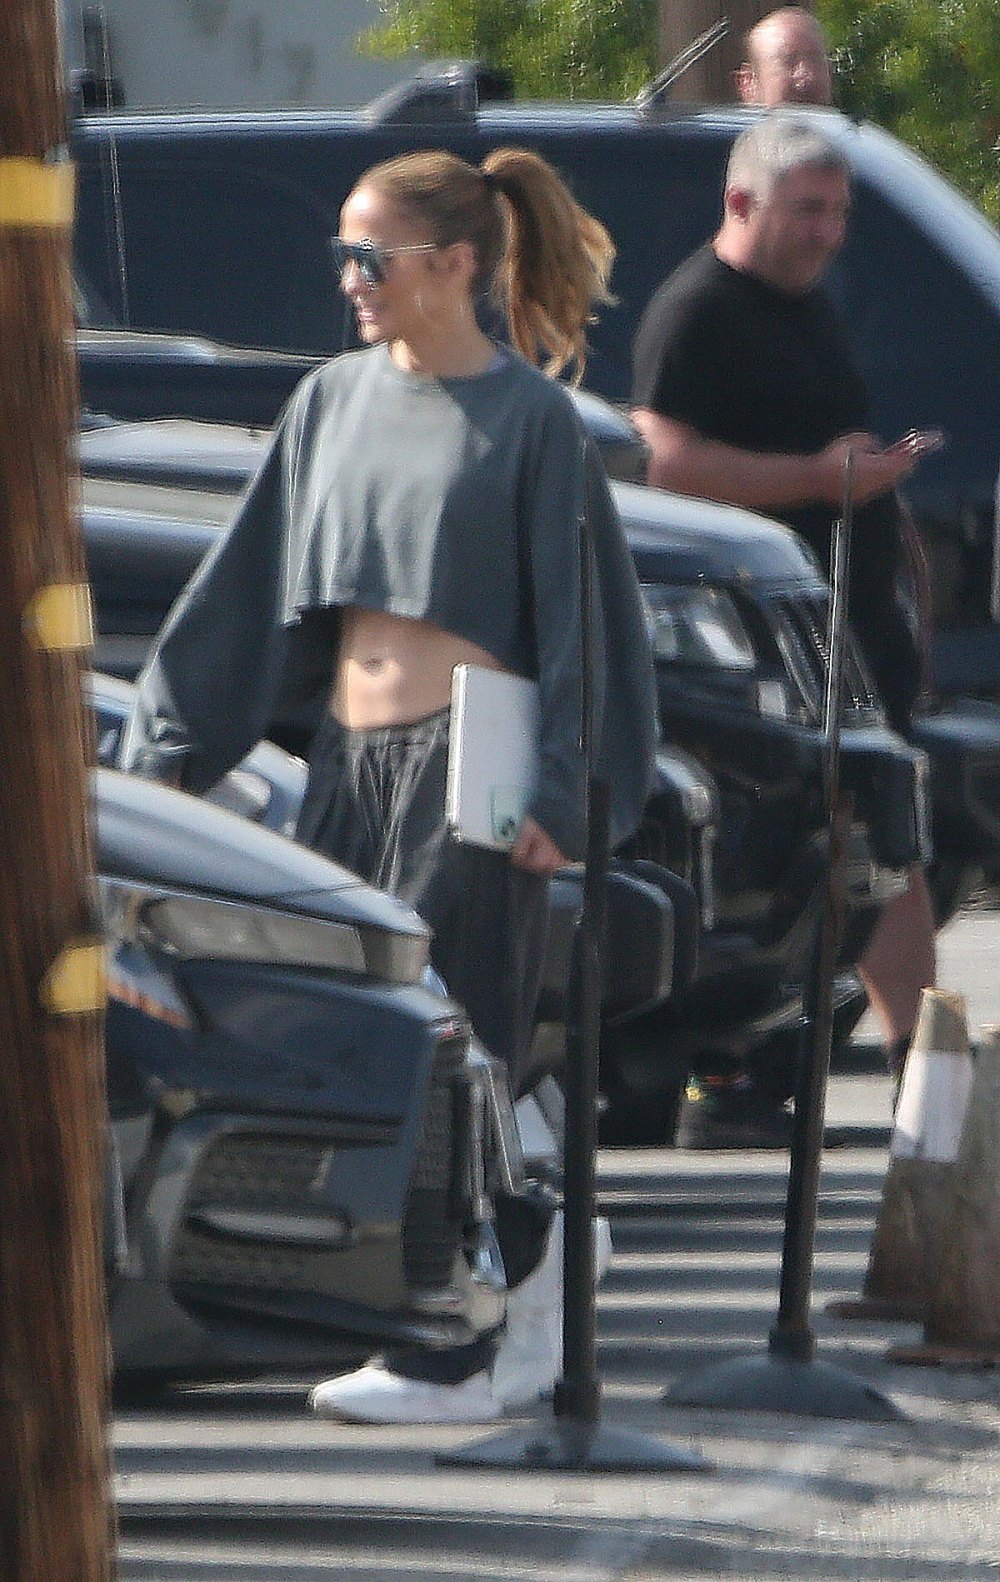 Jennifer Lopez sonríe durante una salida pública en medio de problemas con Ben Affleck 2